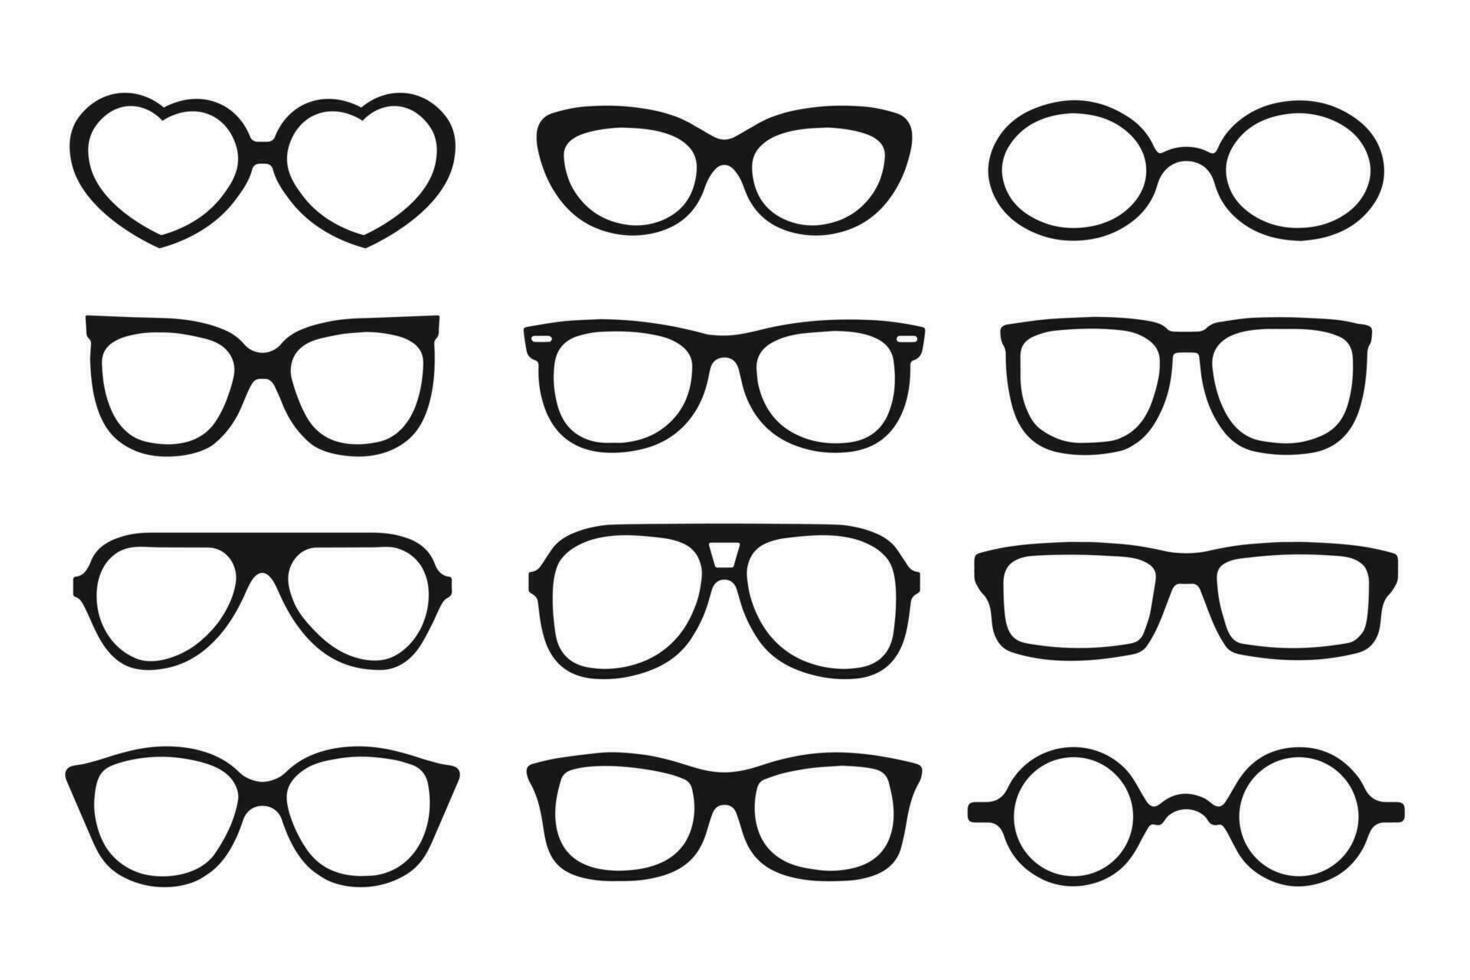 une ensemble de des lunettes de soleil. noir silhouettes de cadres pour aux femmes et Pour des hommes lunettes. Icônes, vecteur